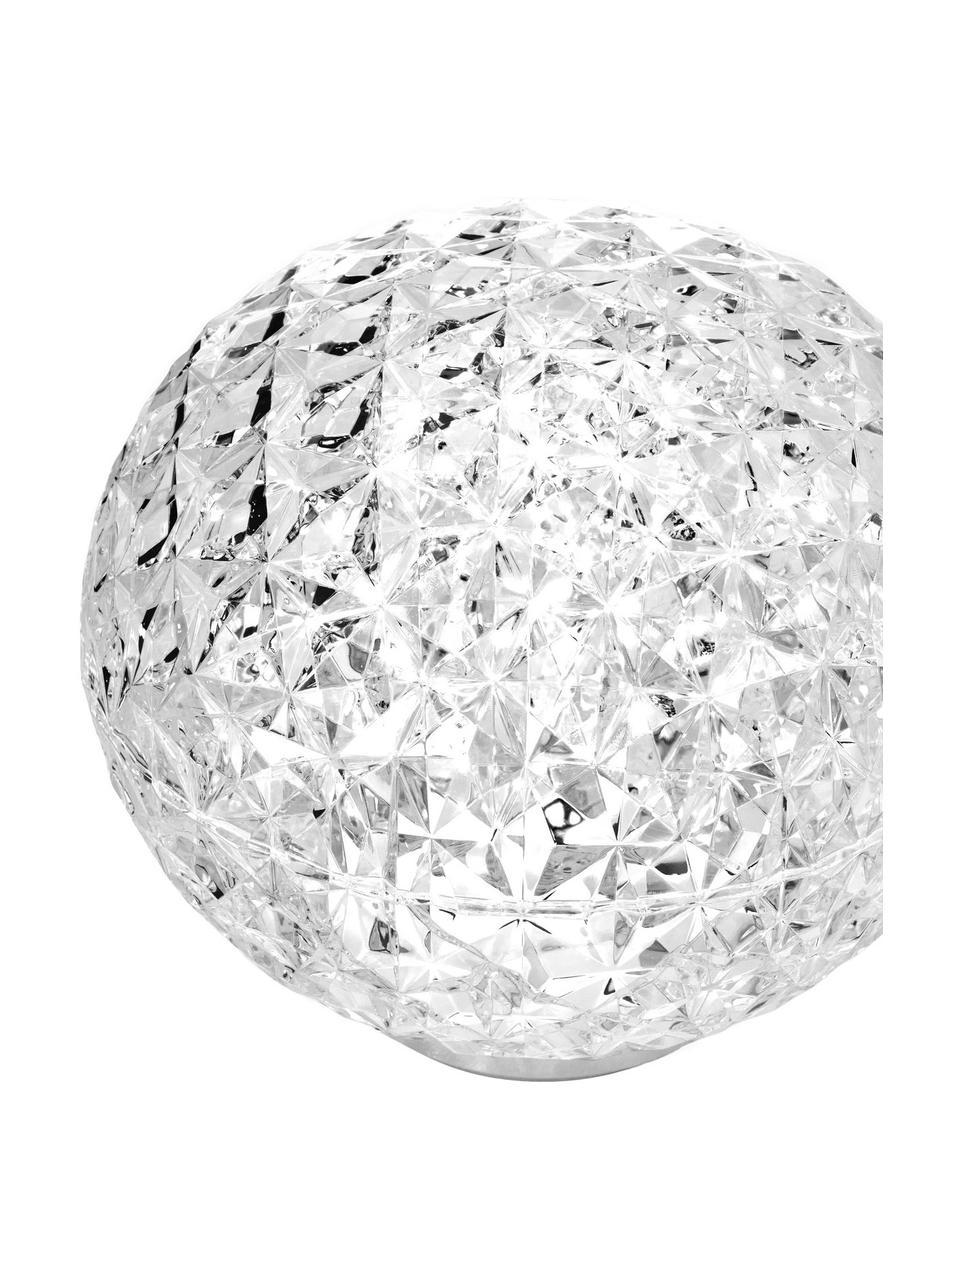 Kleine mobile LED-Tischlampe Planet, dimmbar, Lampenschirm: Durchfärbtes, transparent, Lampenfuß: Thermoplastisches Technop, Transparent, Ø 16 x H 14 cm